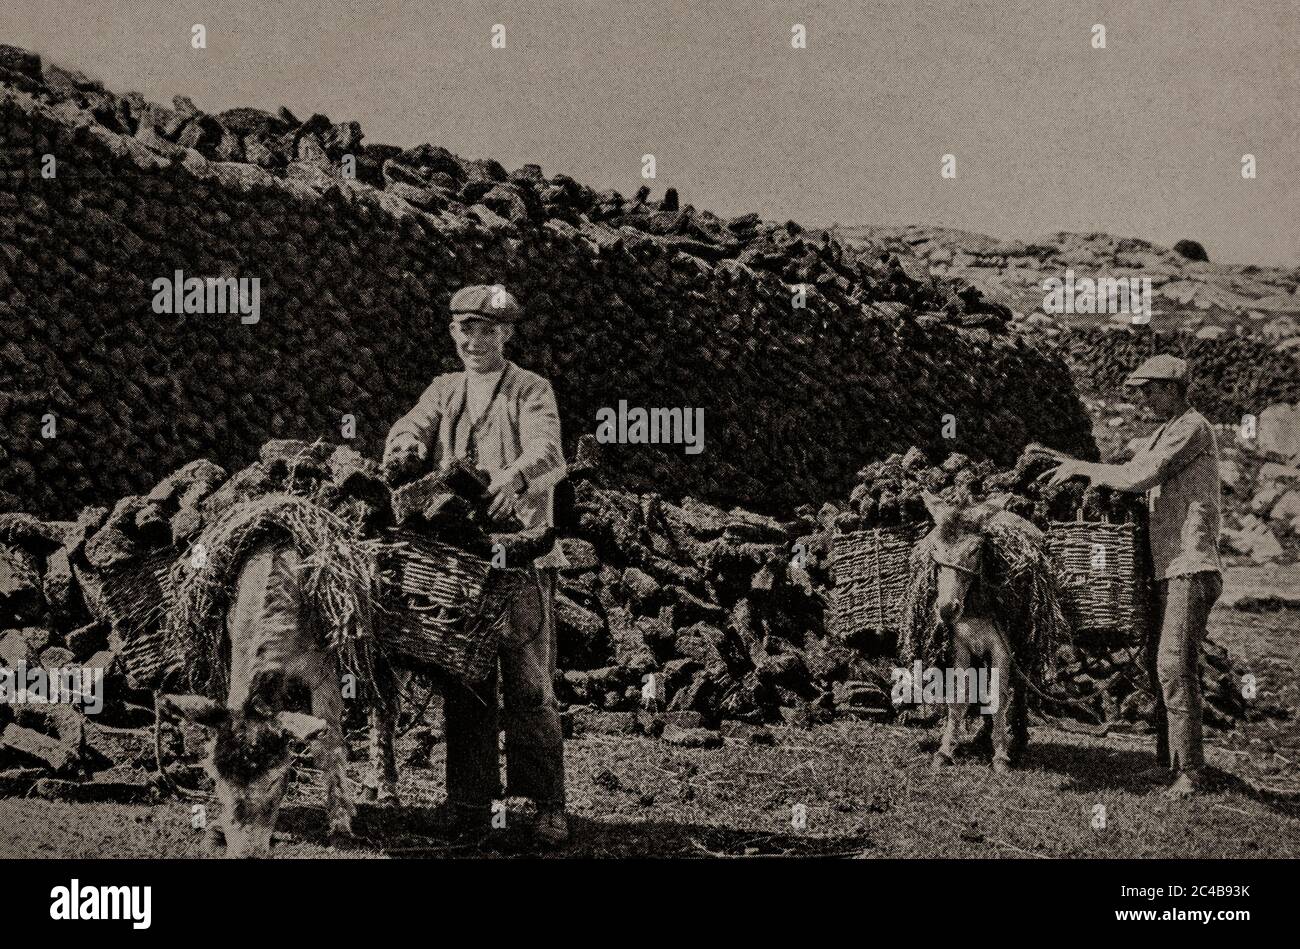 Eine Ansicht der frühen 1920er Jahre der lokalen Bevölkerung und ihrer Esel sammeln Rasen (oder Torf) im Sommer für Winterbrände. Ursprünglich fotografiert von A. W. Cutler (1875-1935) für 'Ireland: The Rock Whence I was Hewn', eine National Geographic Magazine-Spielfilm vom März 1927. Stockfoto